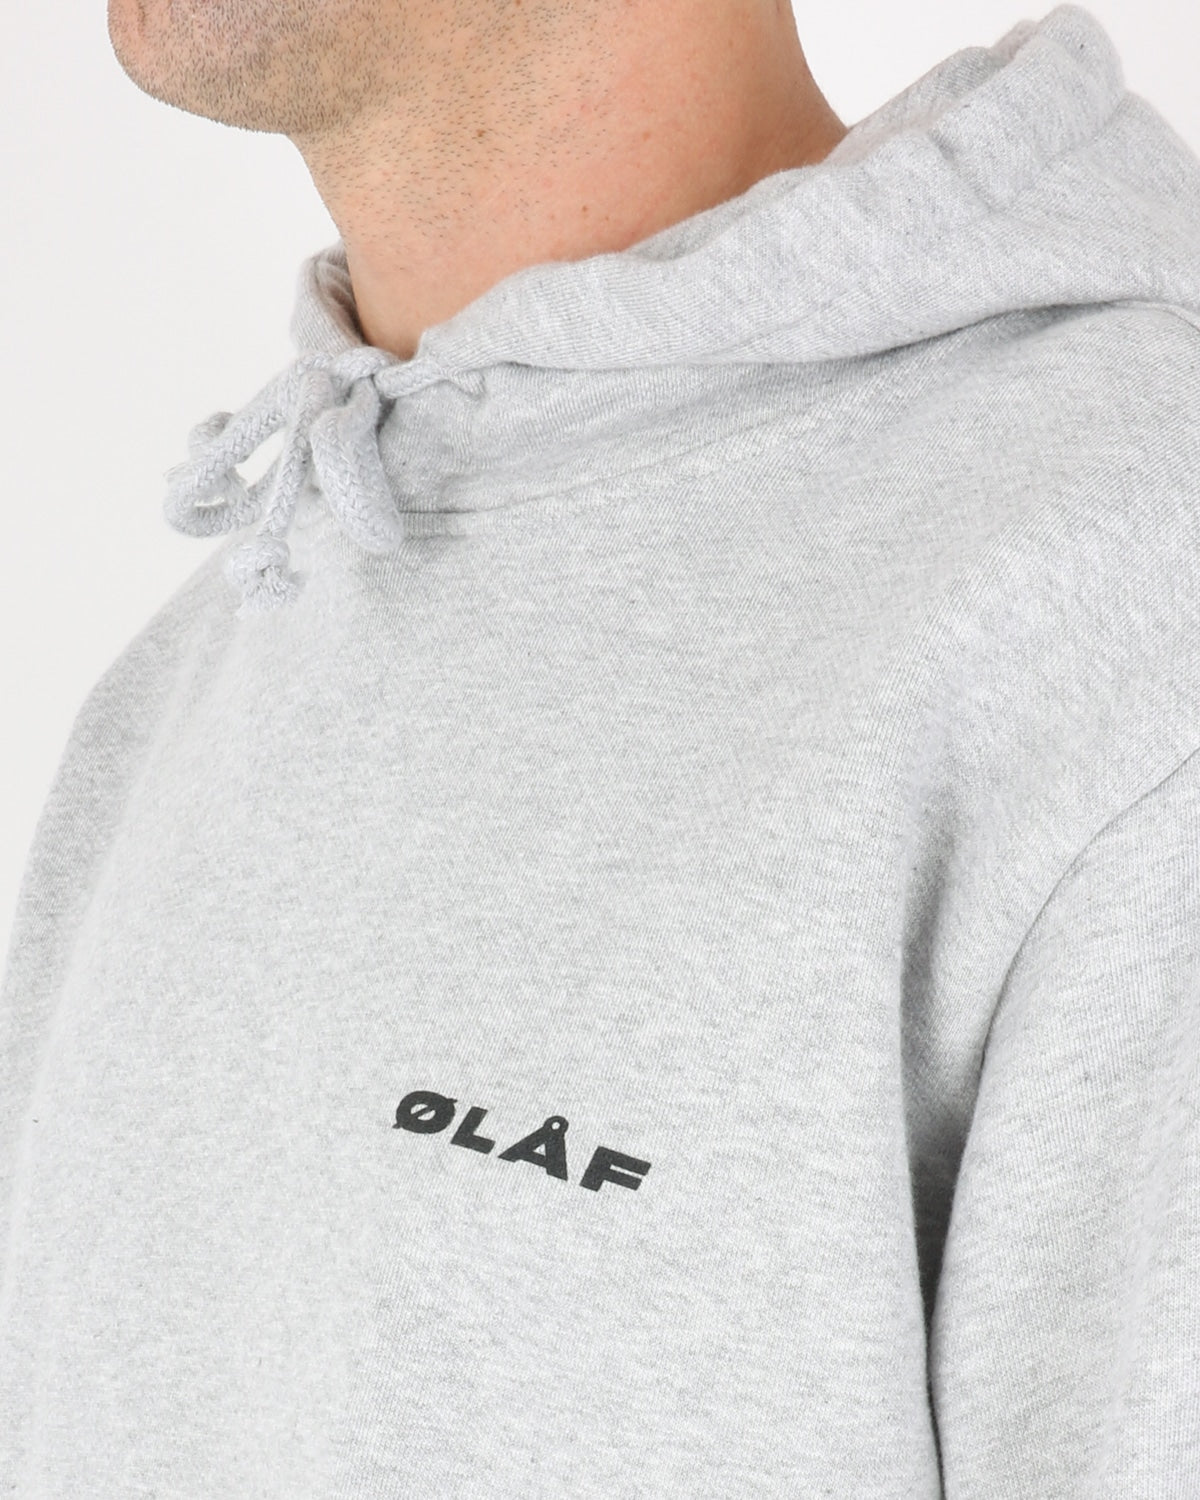 Olaf Uniform Hoodie, heather grey